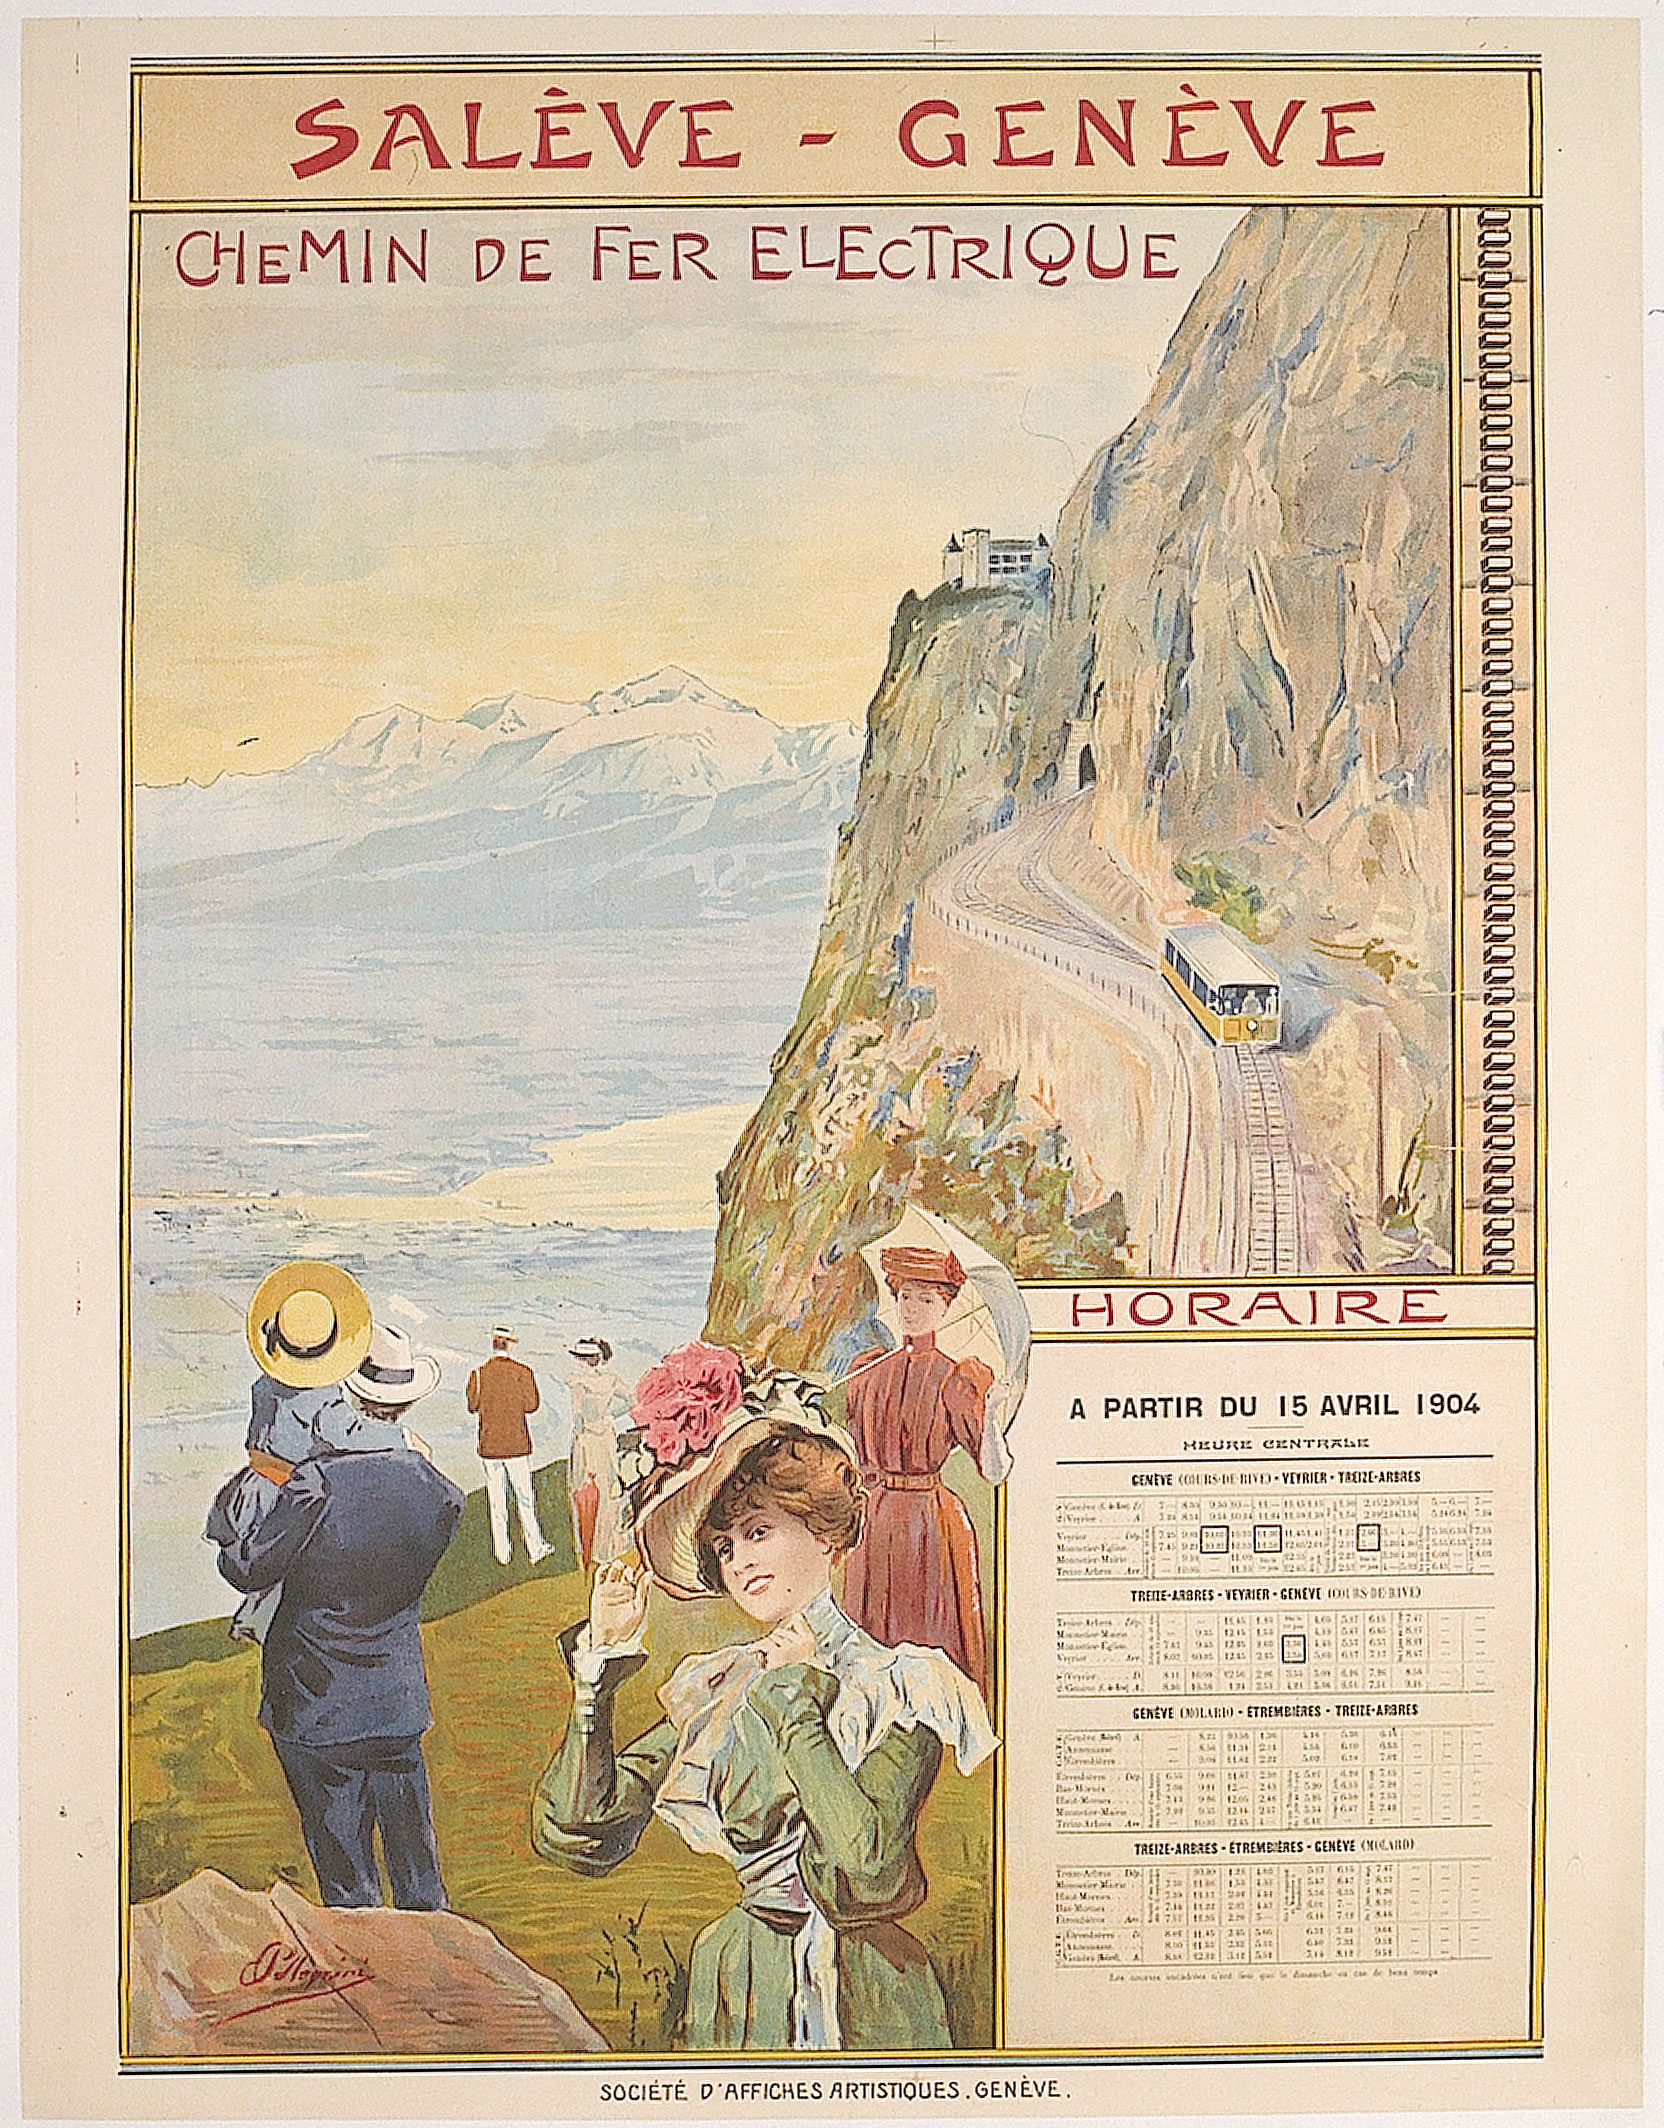 Vintage poster of the Chemin de Fer Electrique Genève-Salève.